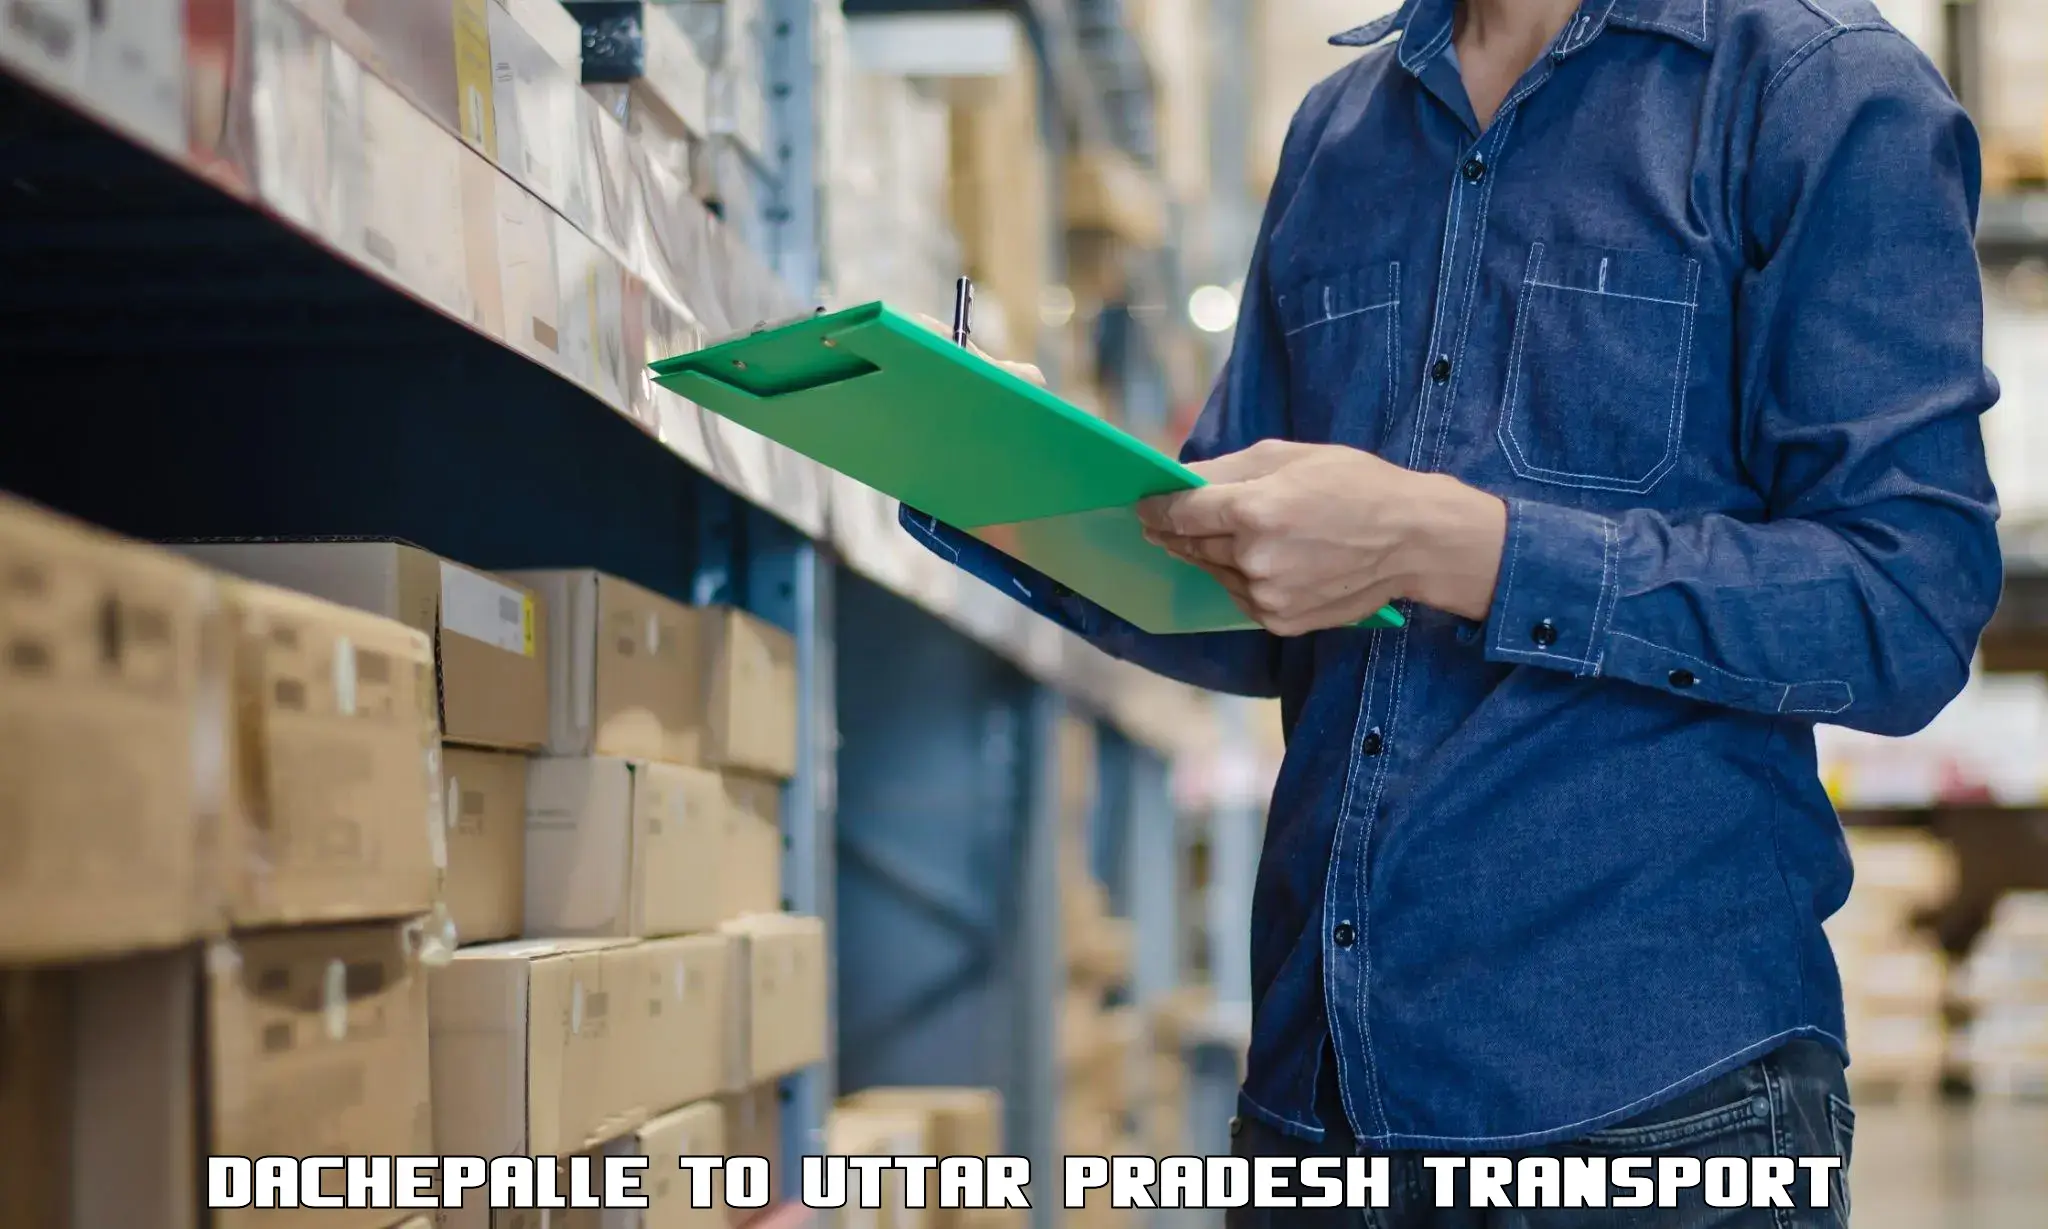 Cargo transport services Dachepalle to Uttar Pradesh